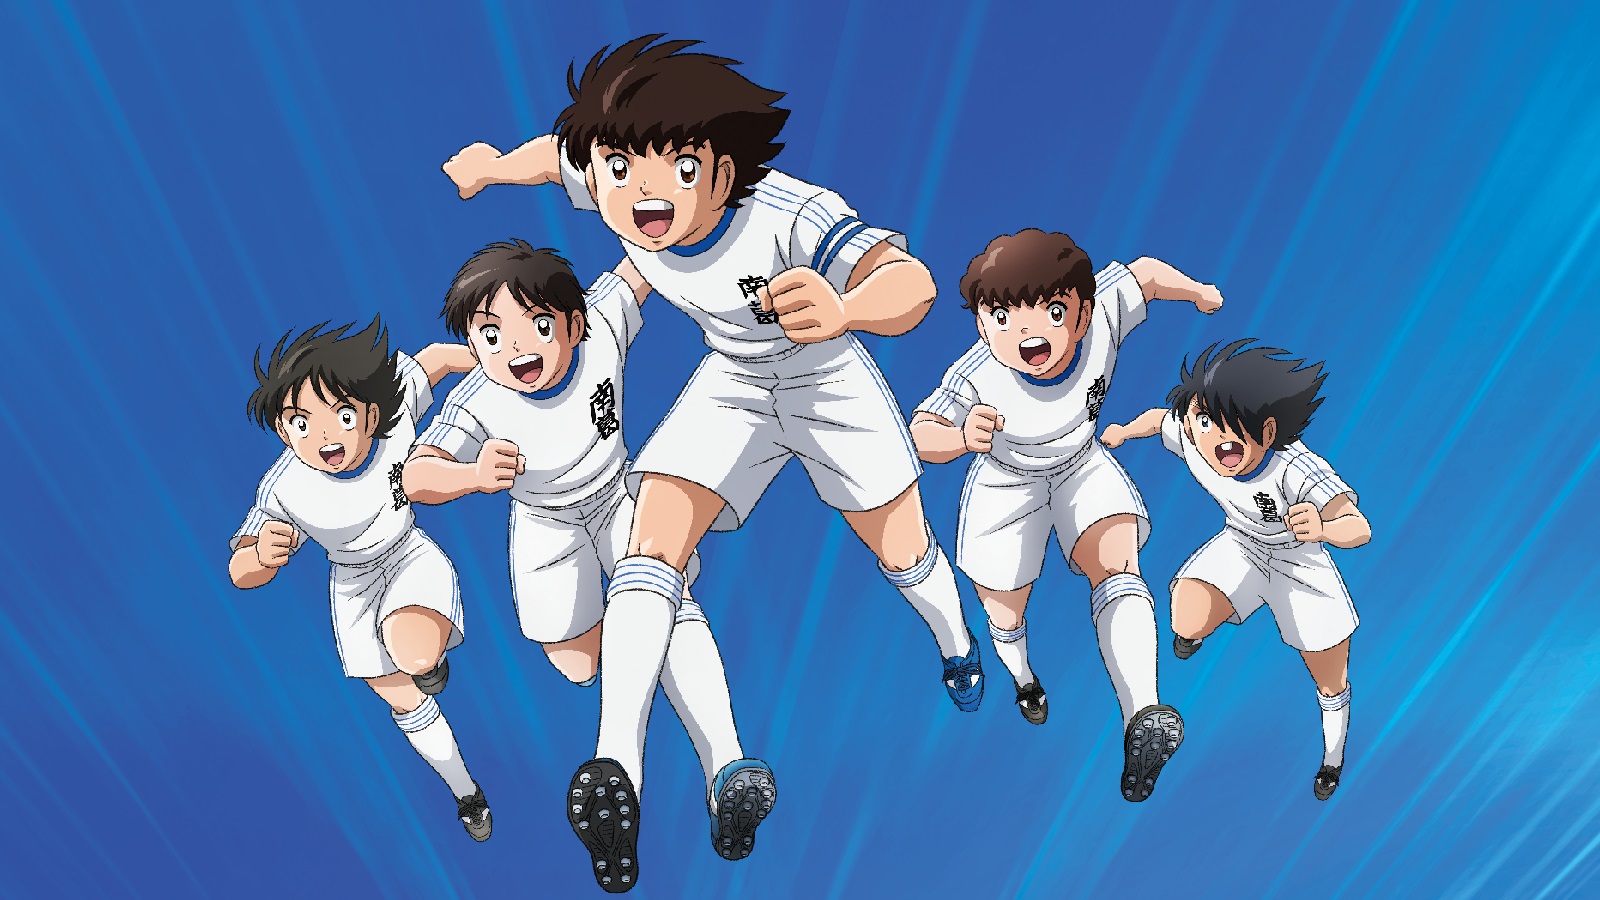 Japanese Cartoon Soccer Player - 1600x900 Wallpaper 